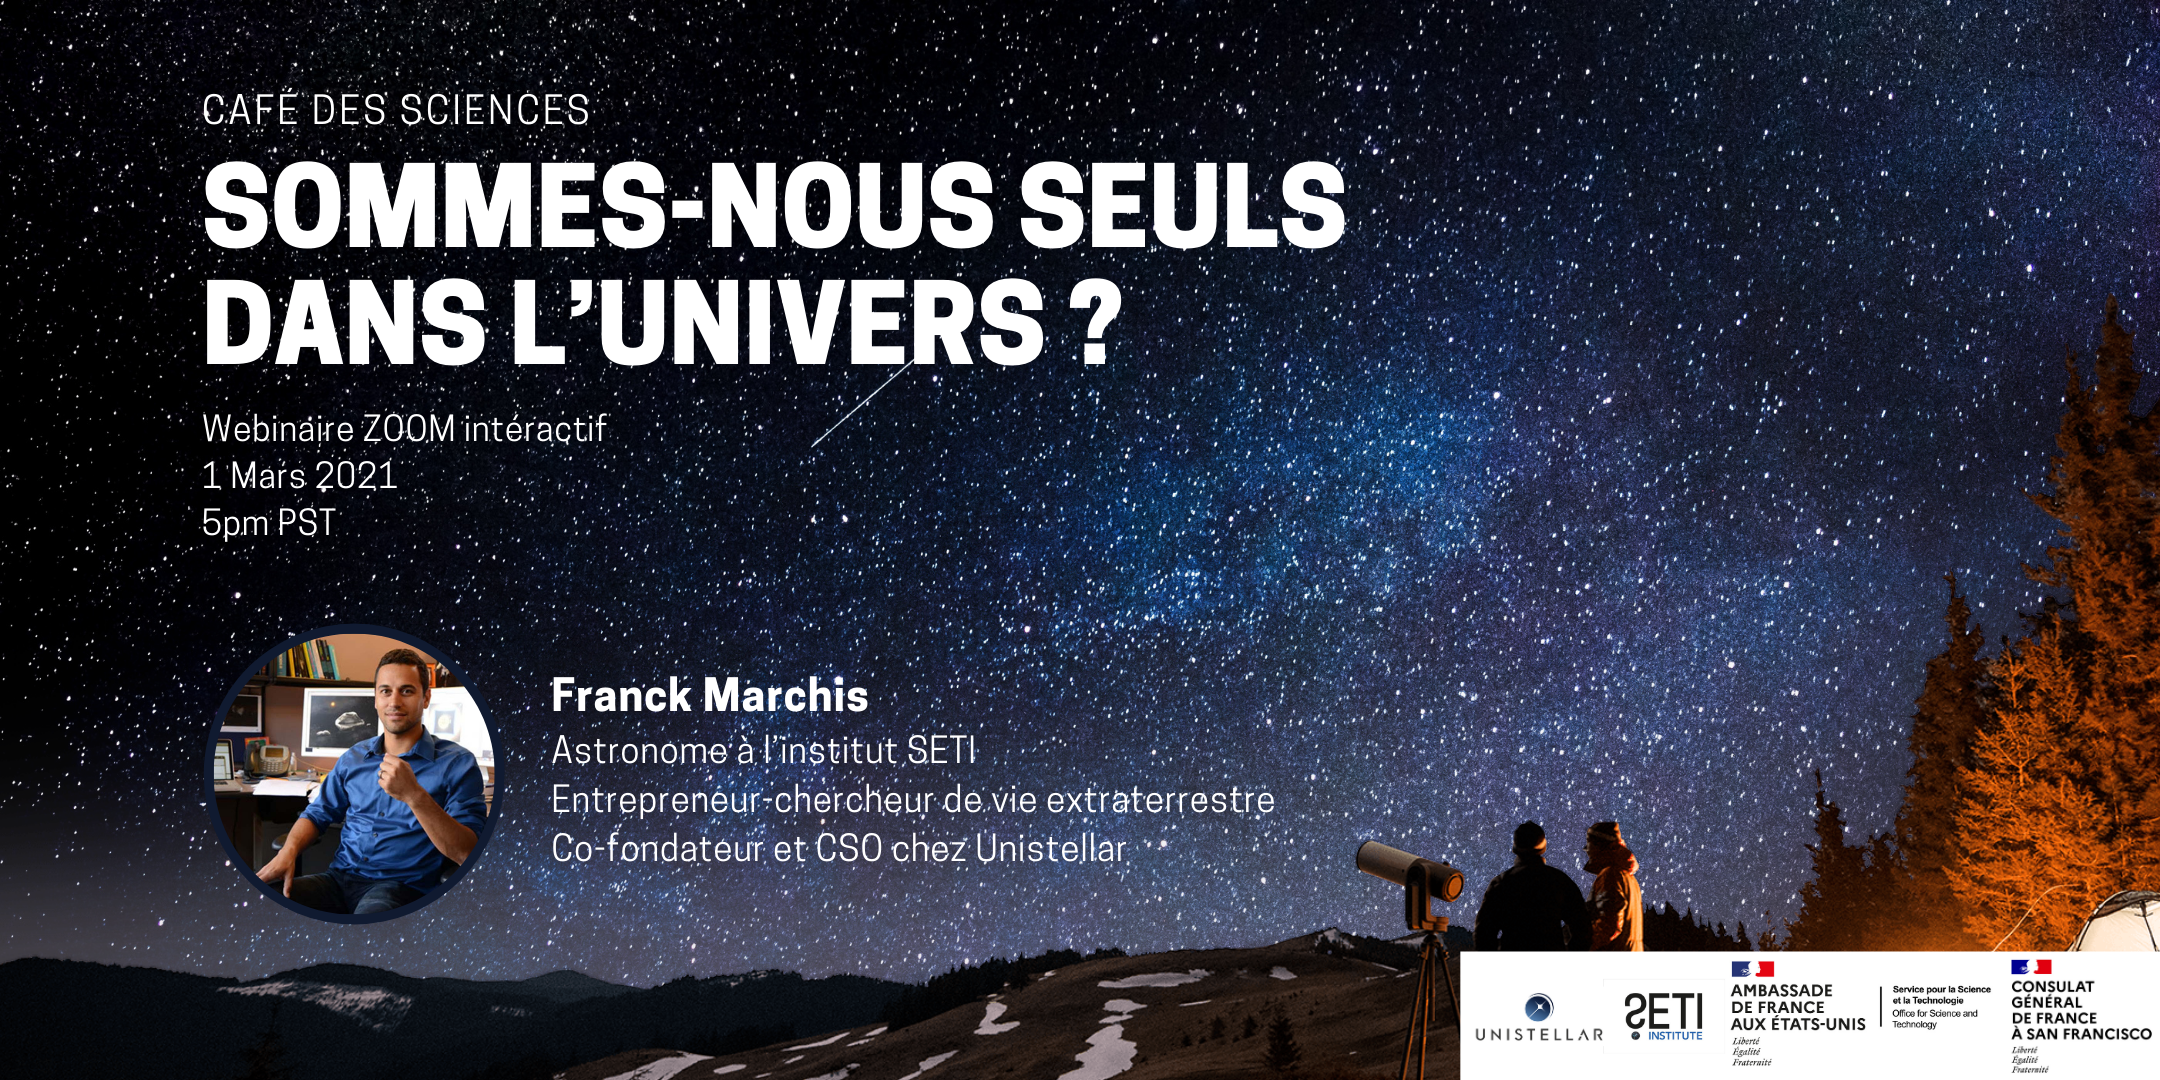 Café des sciences 02:21 - A la recherche de vie extraterrestre, Franck Marchis